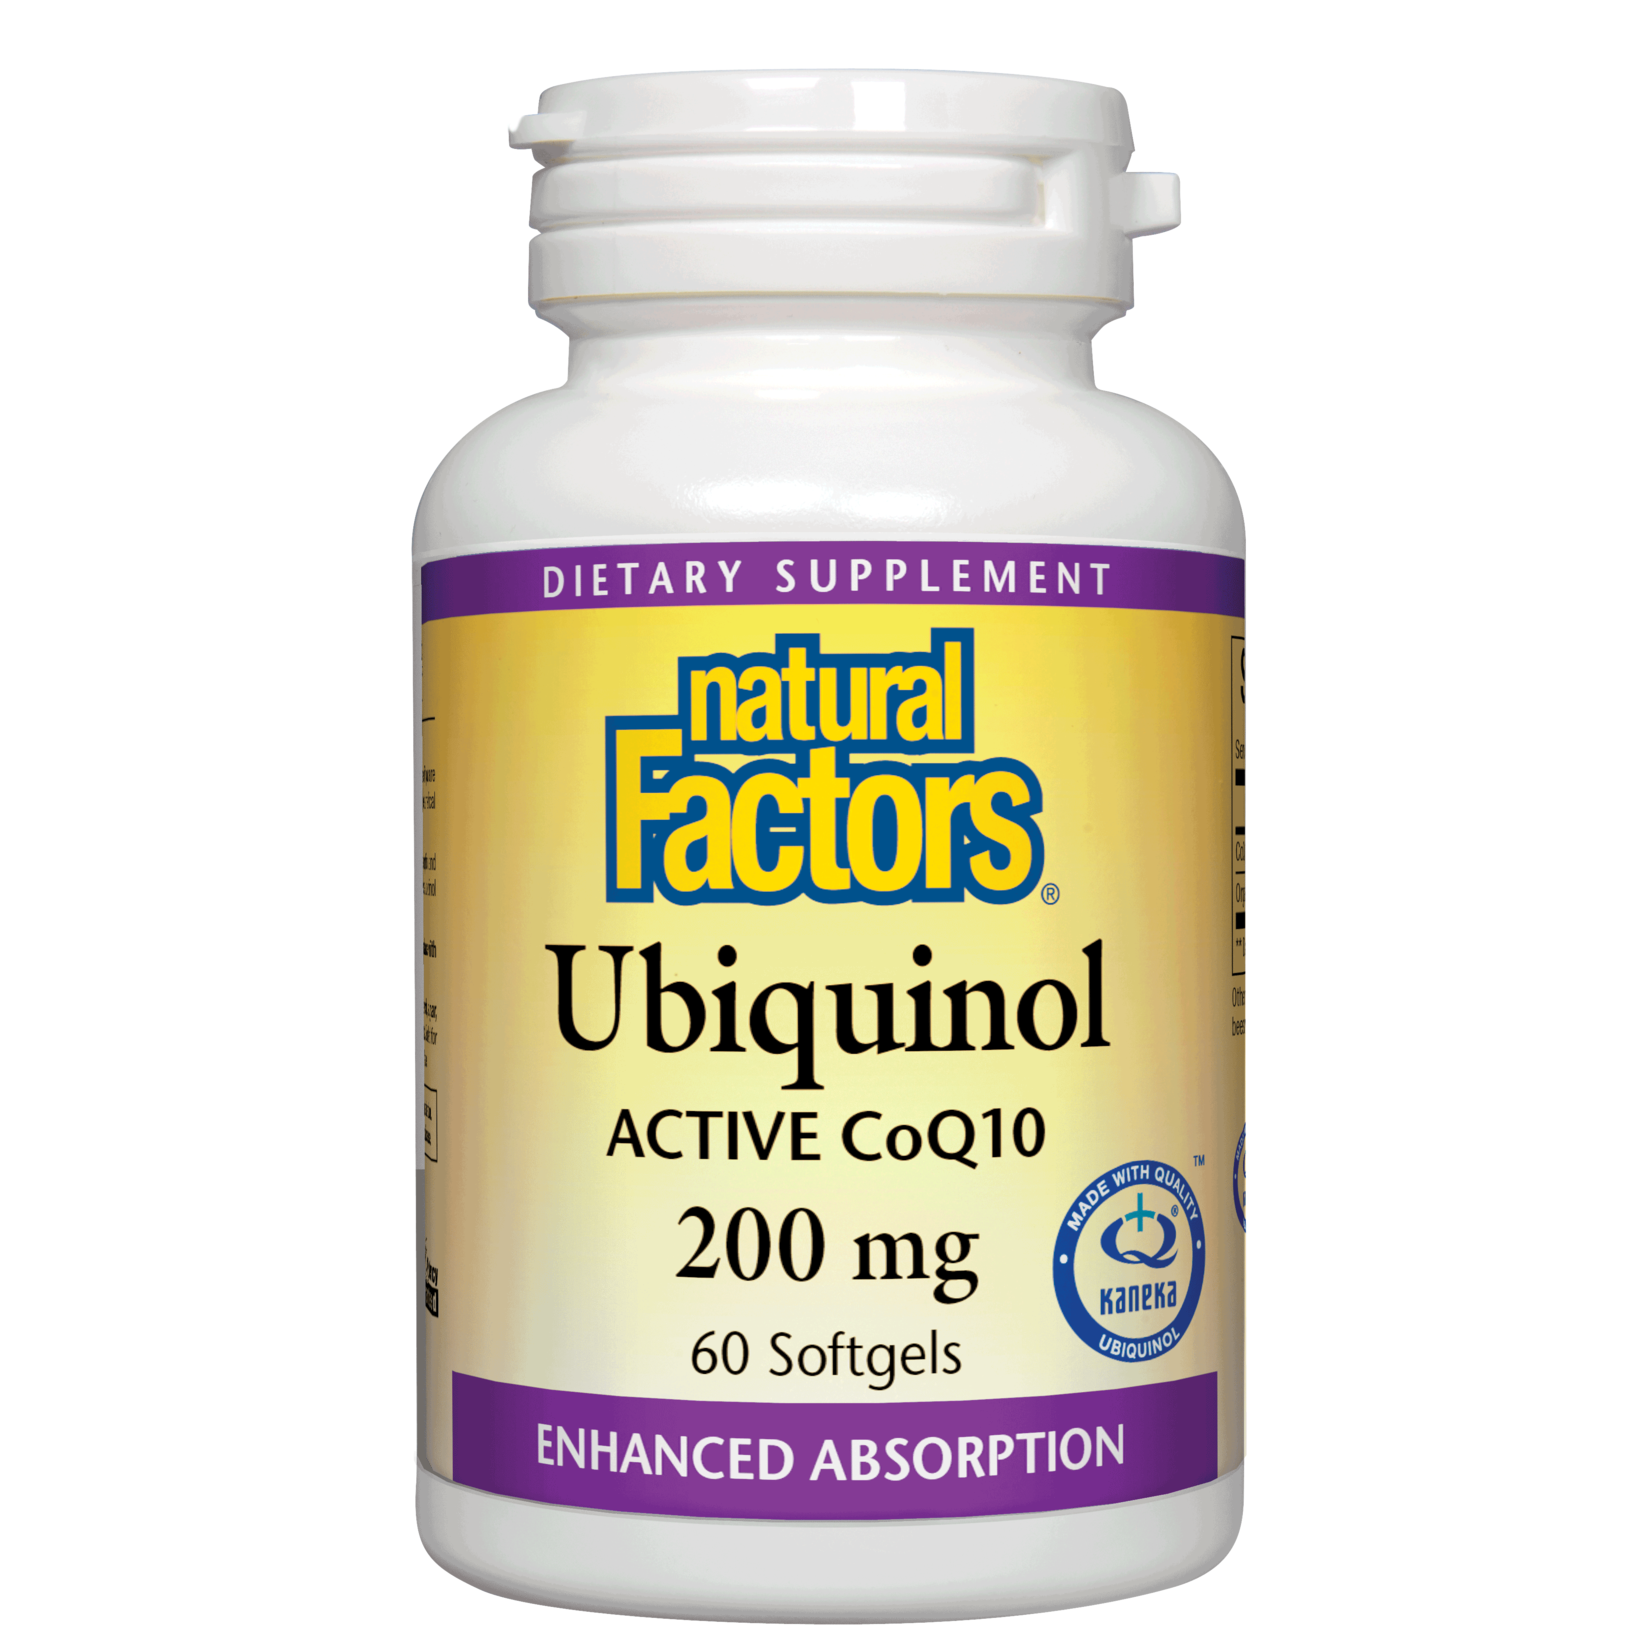 Natural Factors Natural Factors - Ubiquinol Active Coq10 200 mg - 60 Softgels